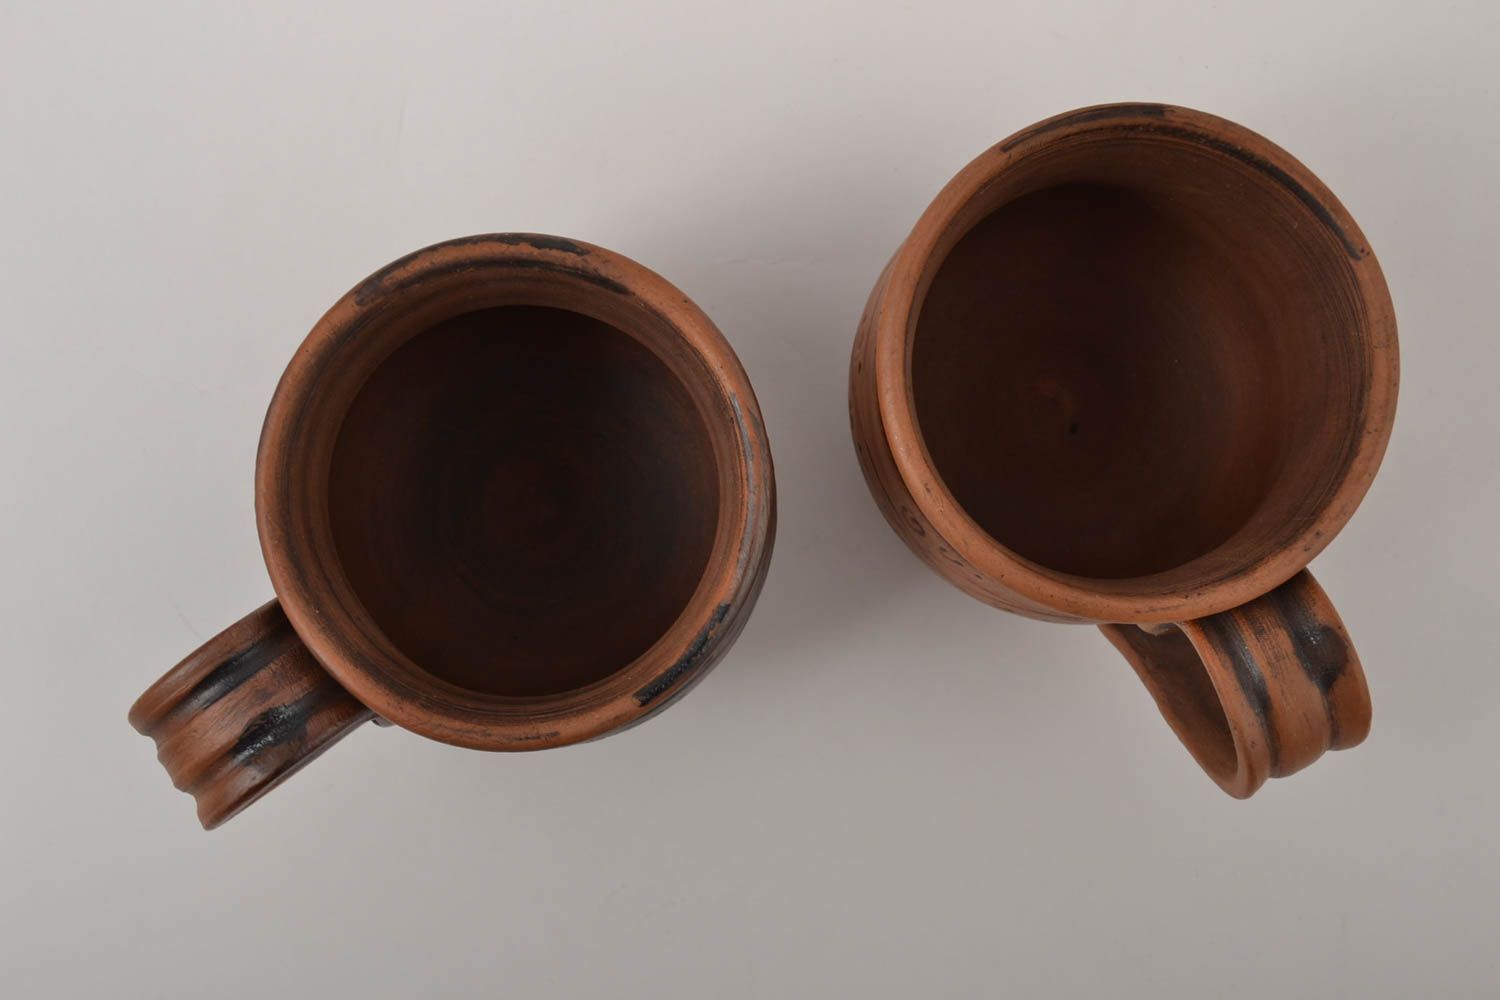 Глиняные чашки ручной работы керамическая посуда набор столовой посуды фото 2